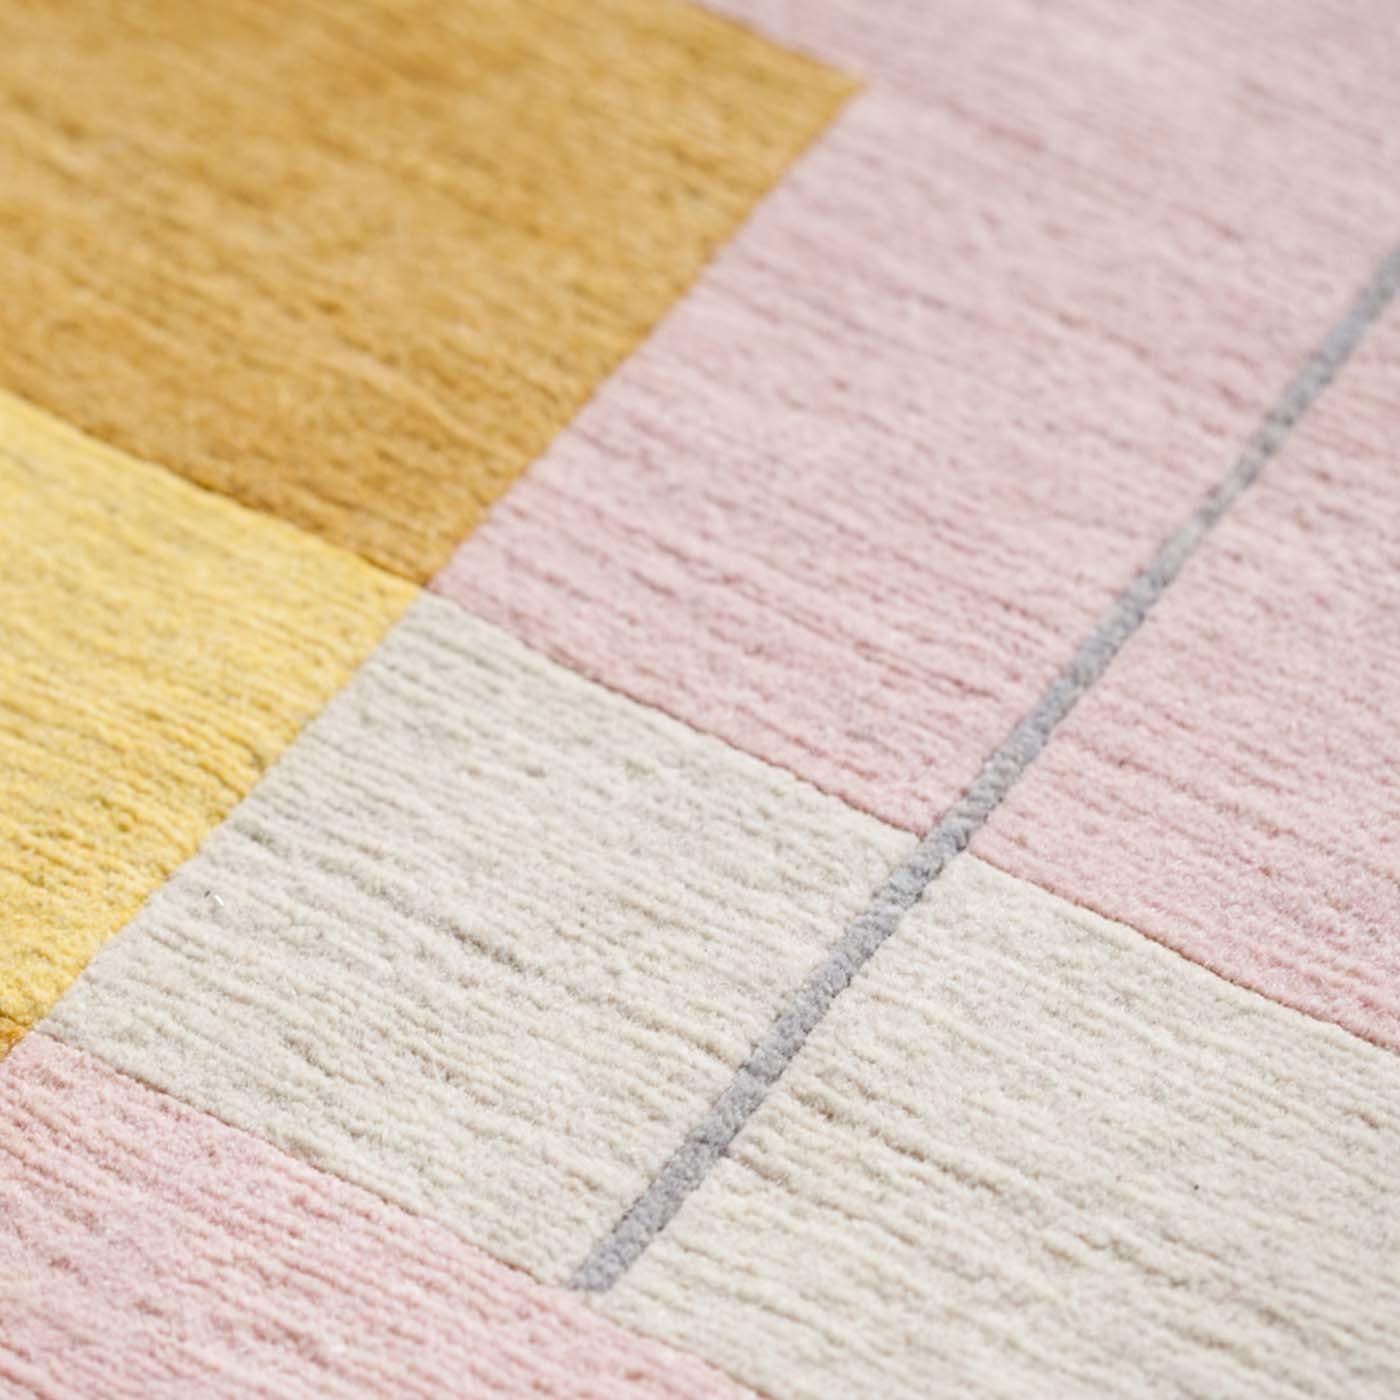 Composizione 57 12 est née du désir de produire des tapis qui reprennent les formes pures et la palette de Manlio Rho, en reproduisant la chaleur de ses couleurs empruntées à la campagne lombarde. Le tapis (300 x 200 cm) devient une toile sur